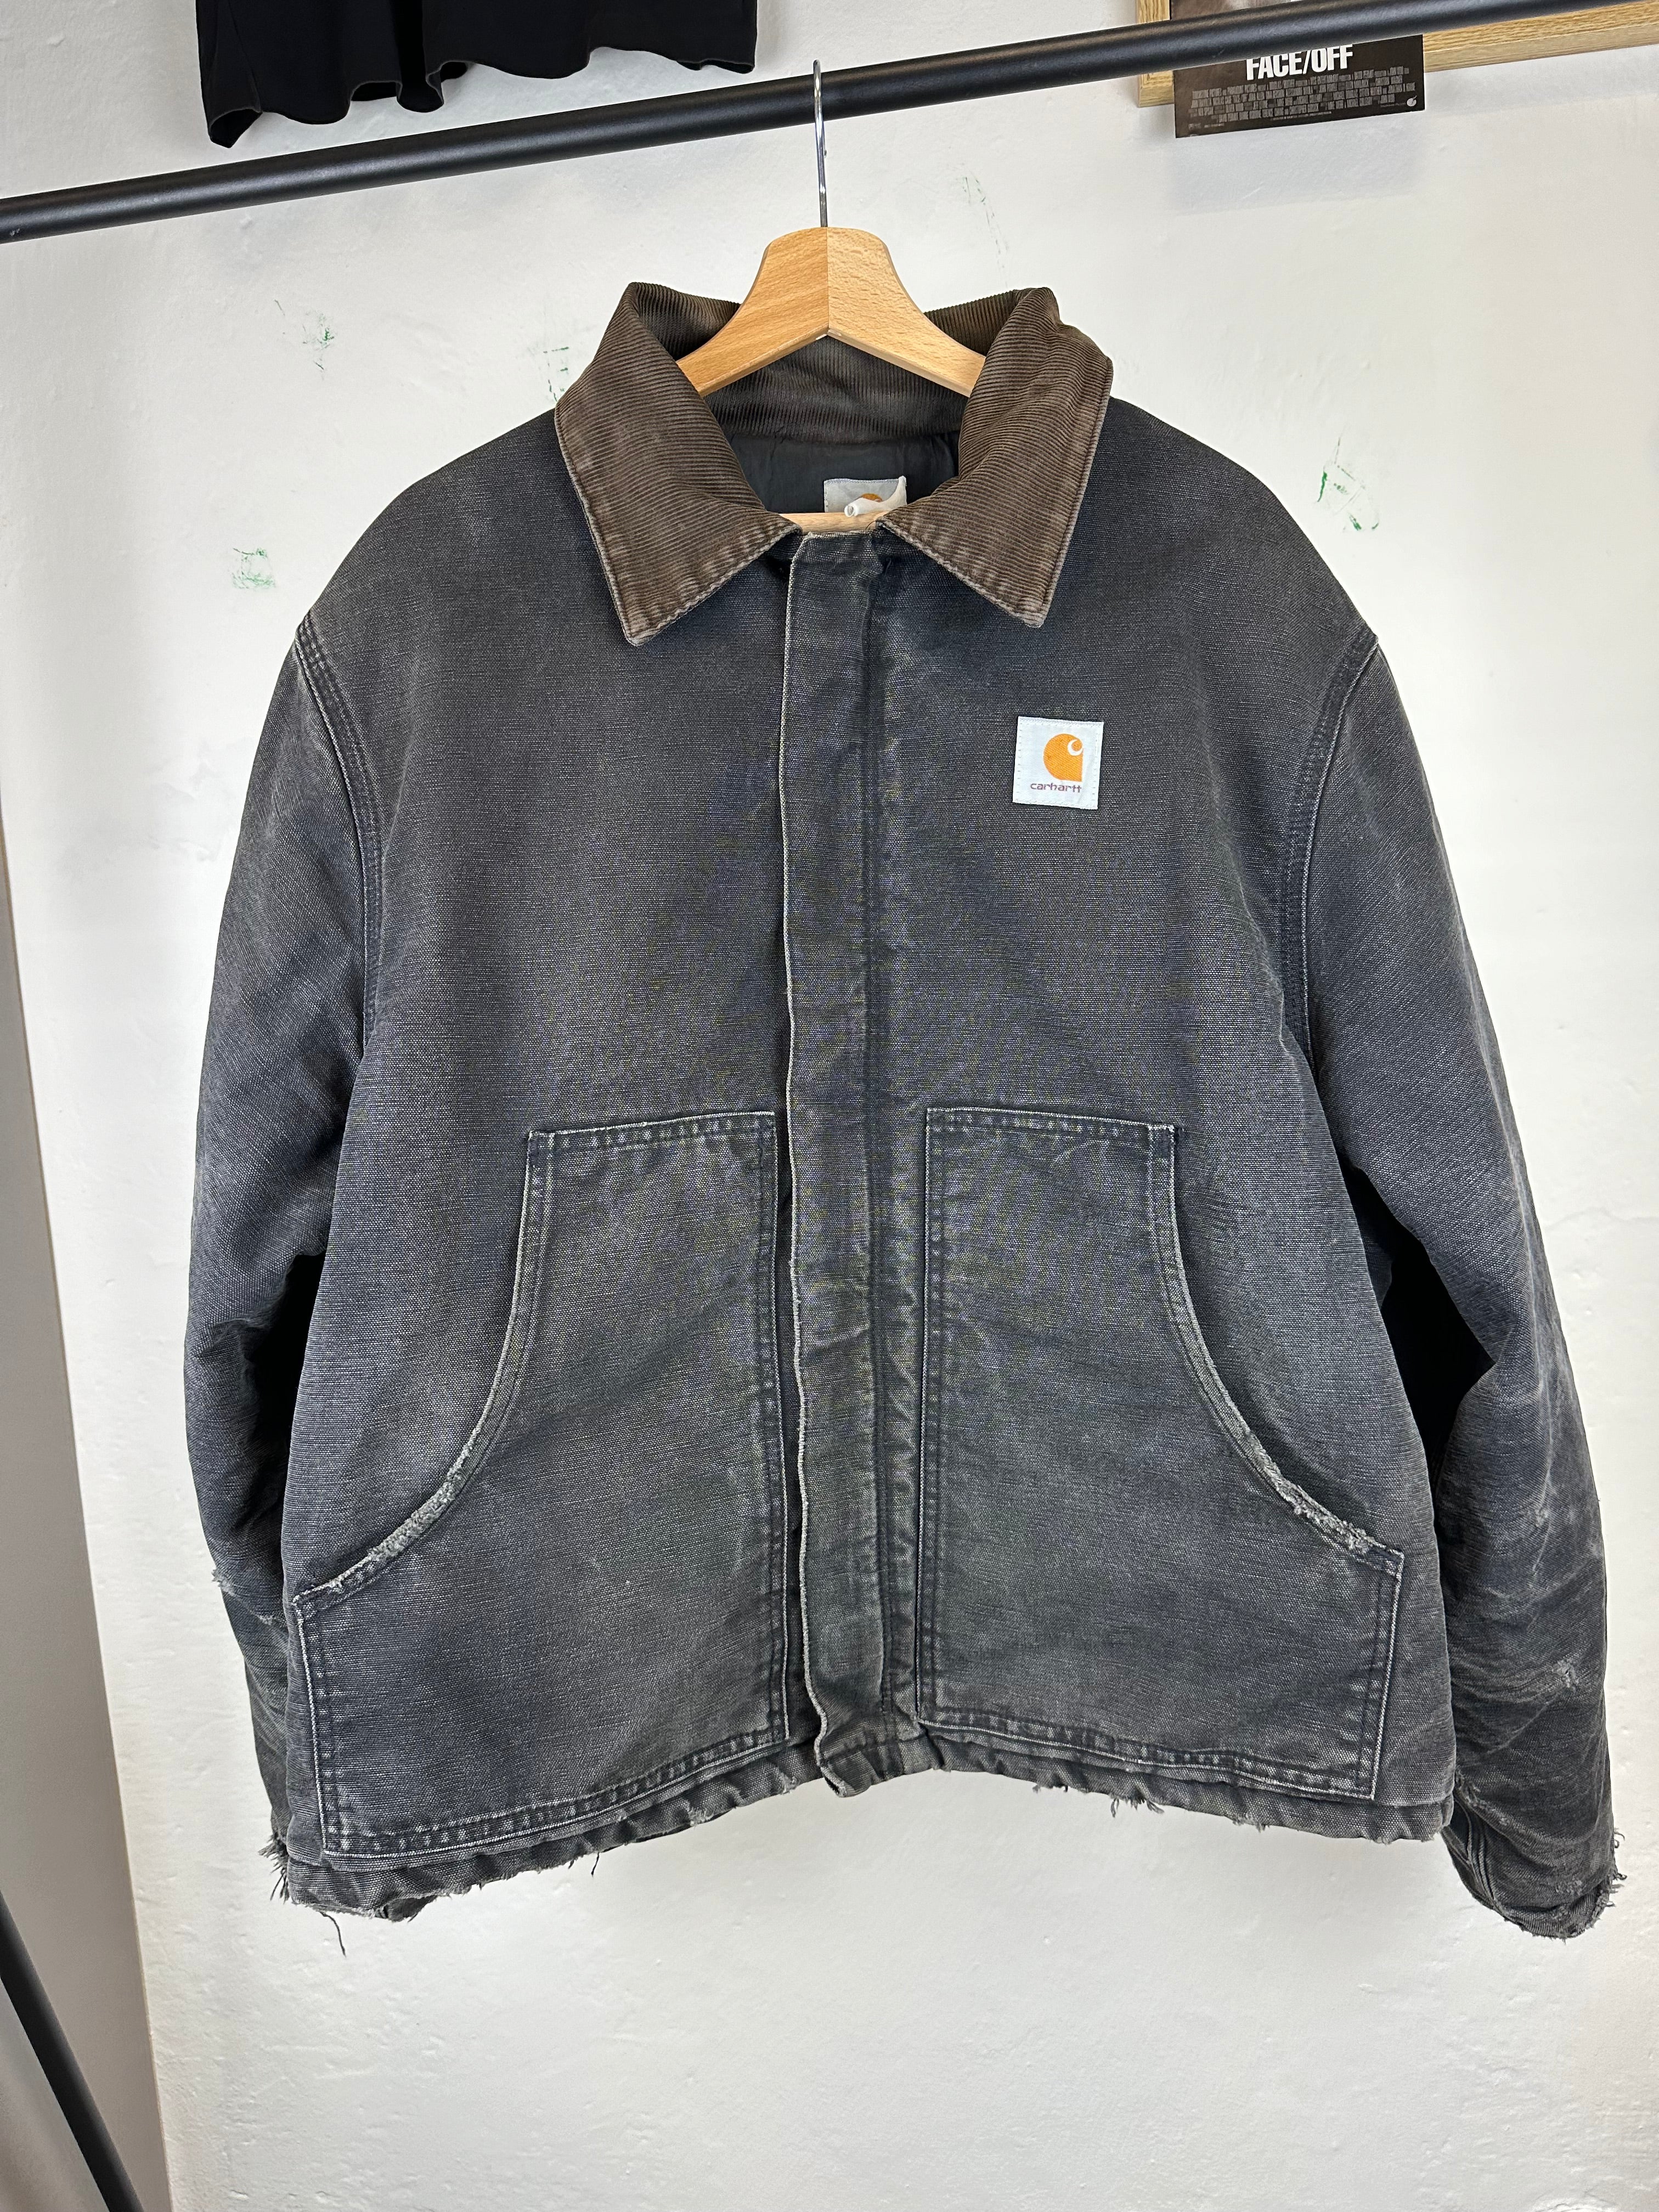 Vintage Carhartt Arctic Jacket - size L